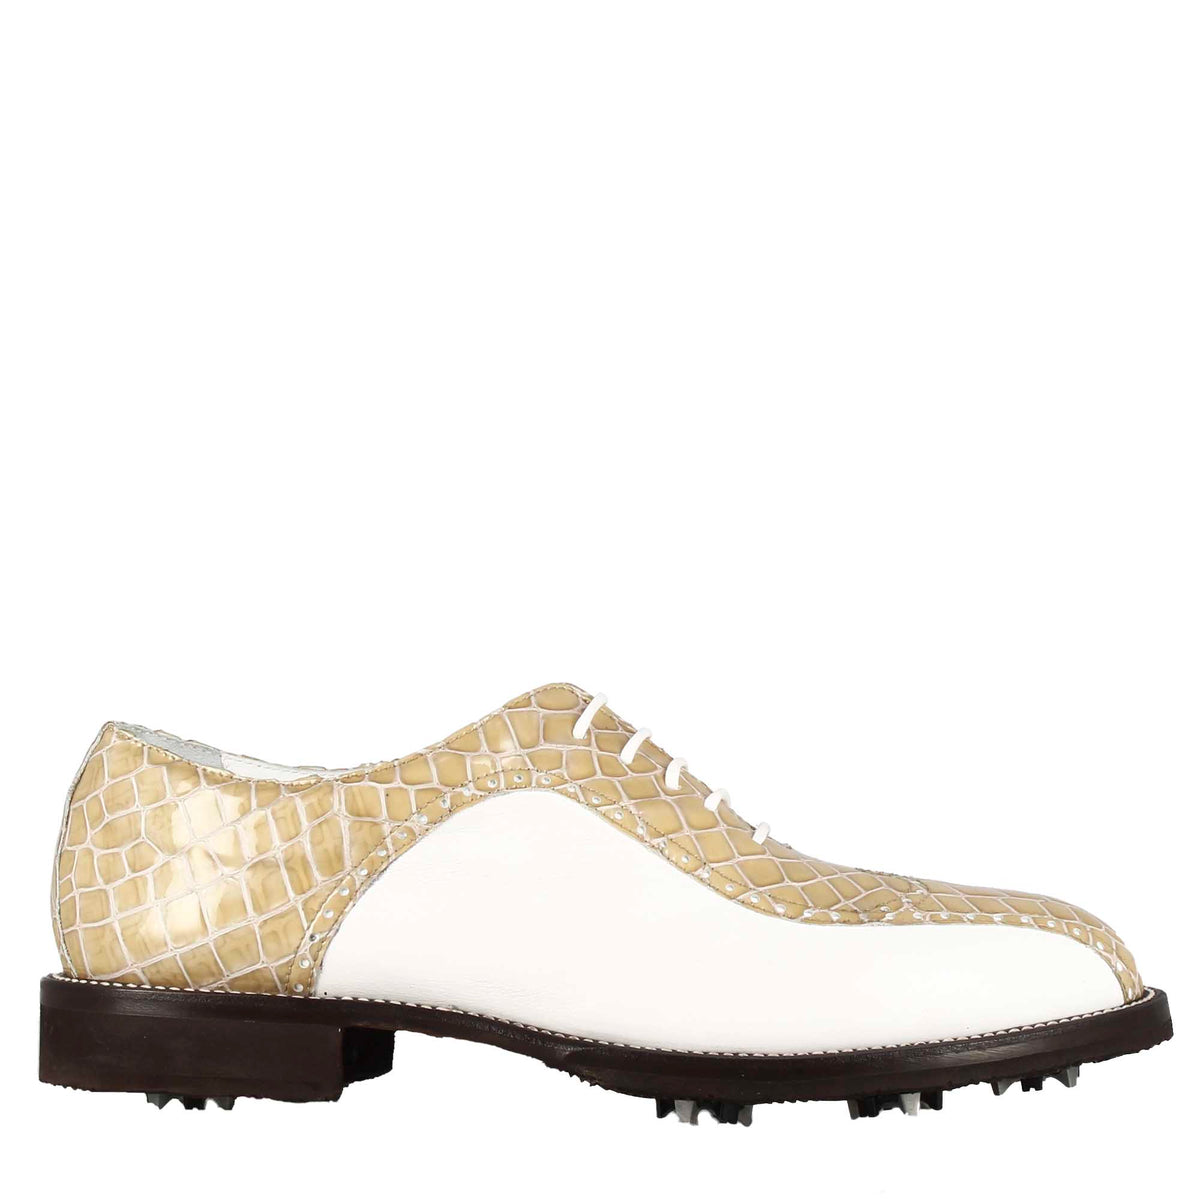 Chaussures de golf pour homme en cuir bicolore blanc et beige imprimé crocodile